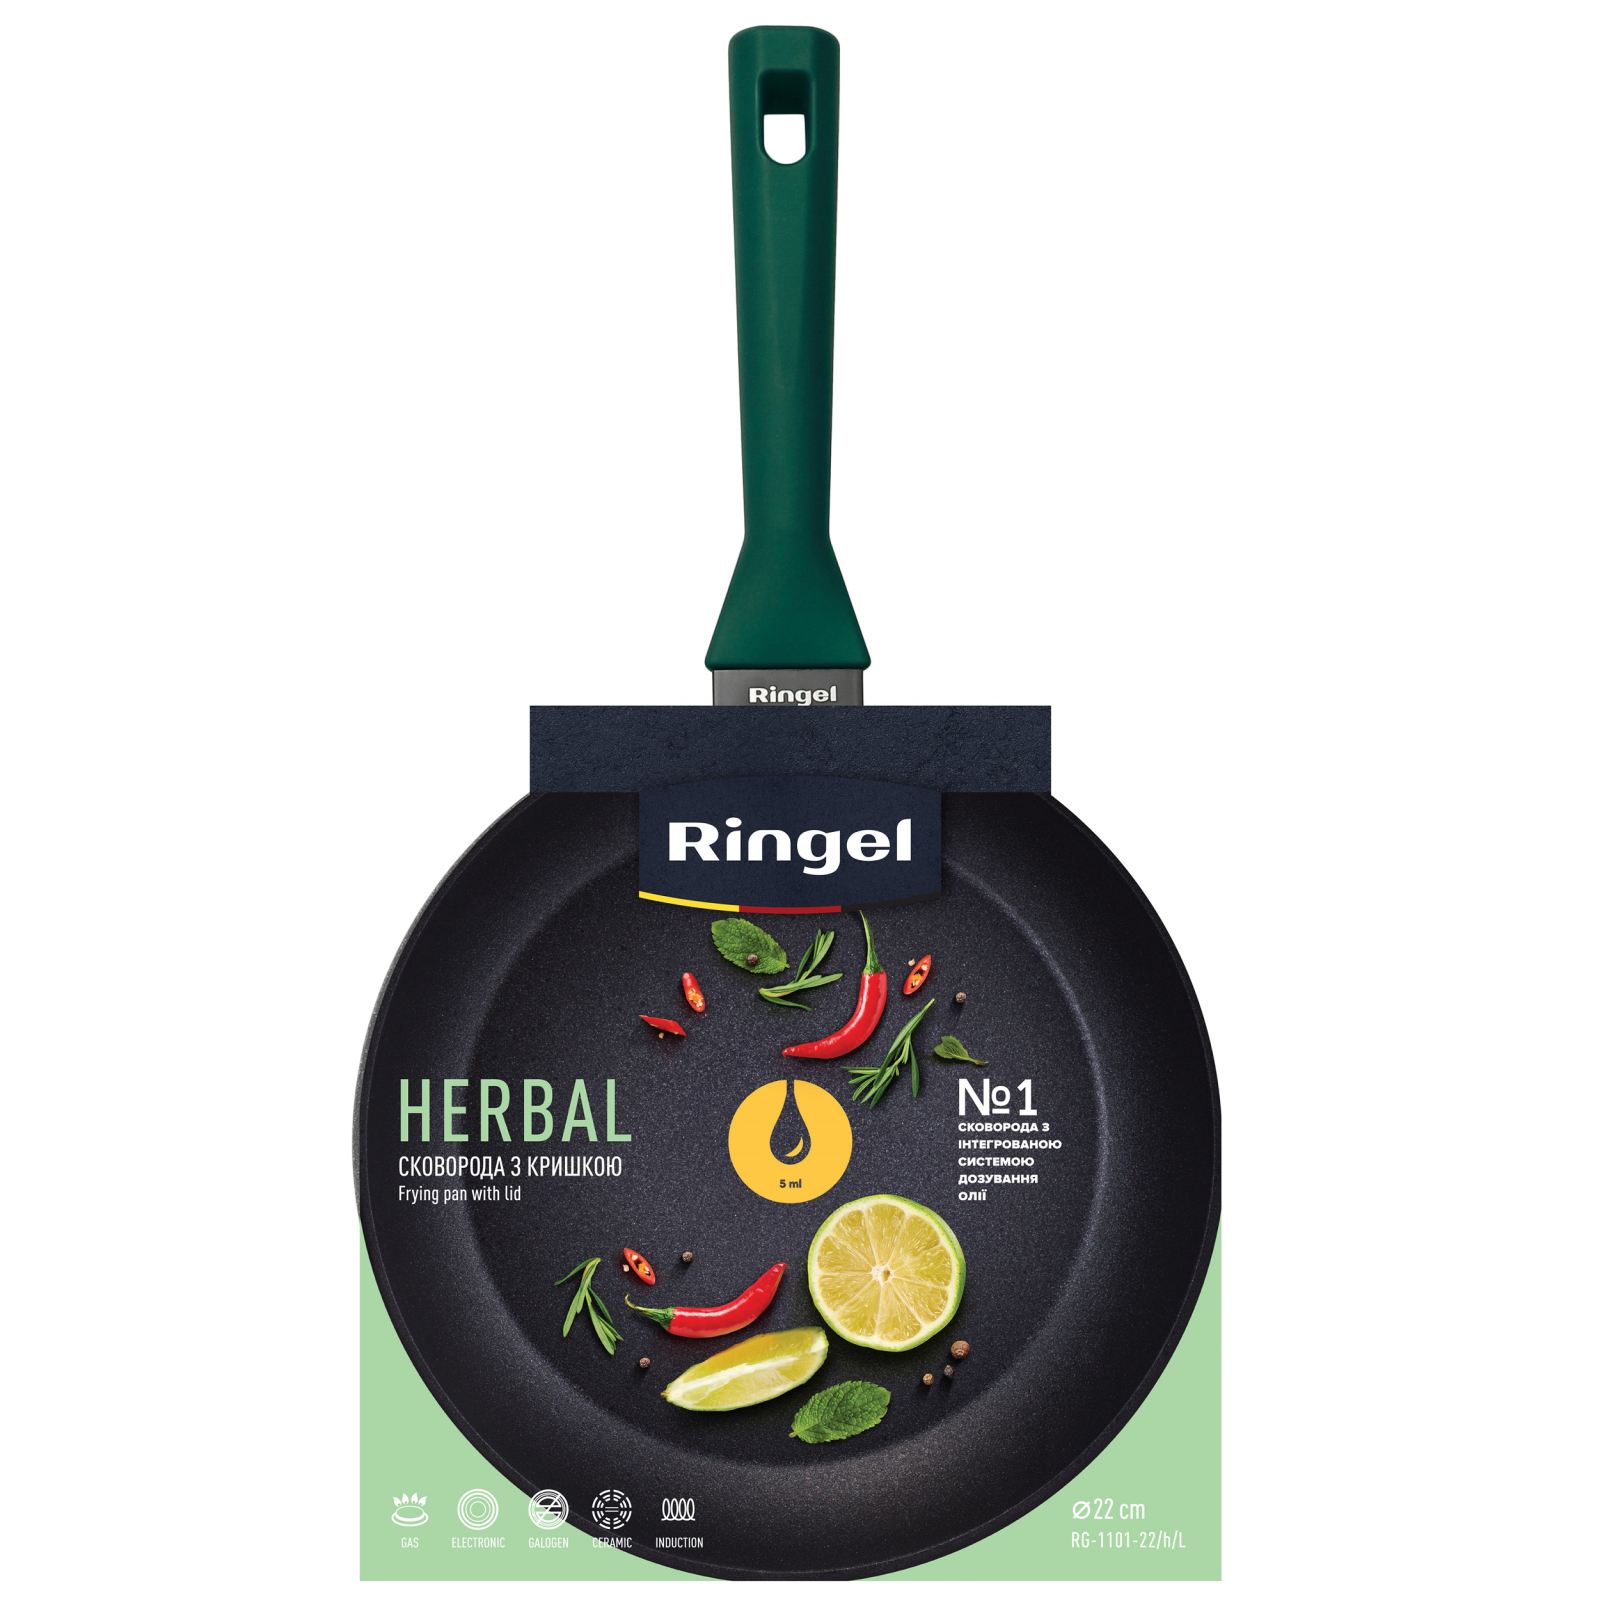 Сковорода Ringel Herbal 28 см (RG-1101-28/h/L) изображение 5